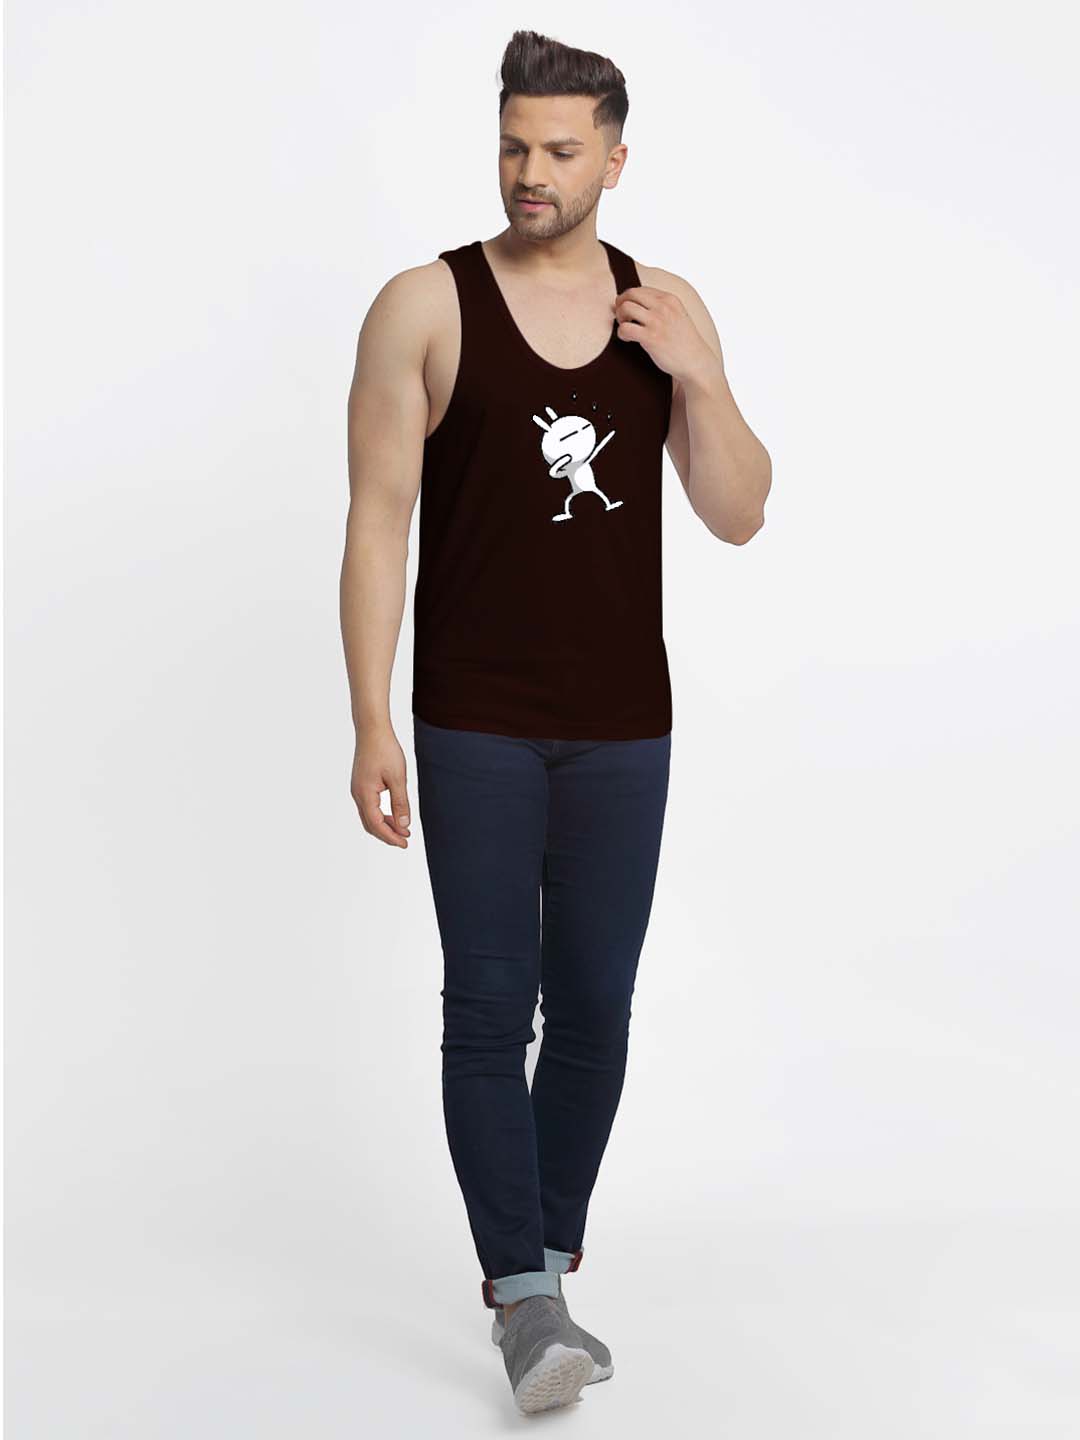 Mens's Dancing Stars Printed Innerwear Gym Vest - Friskers